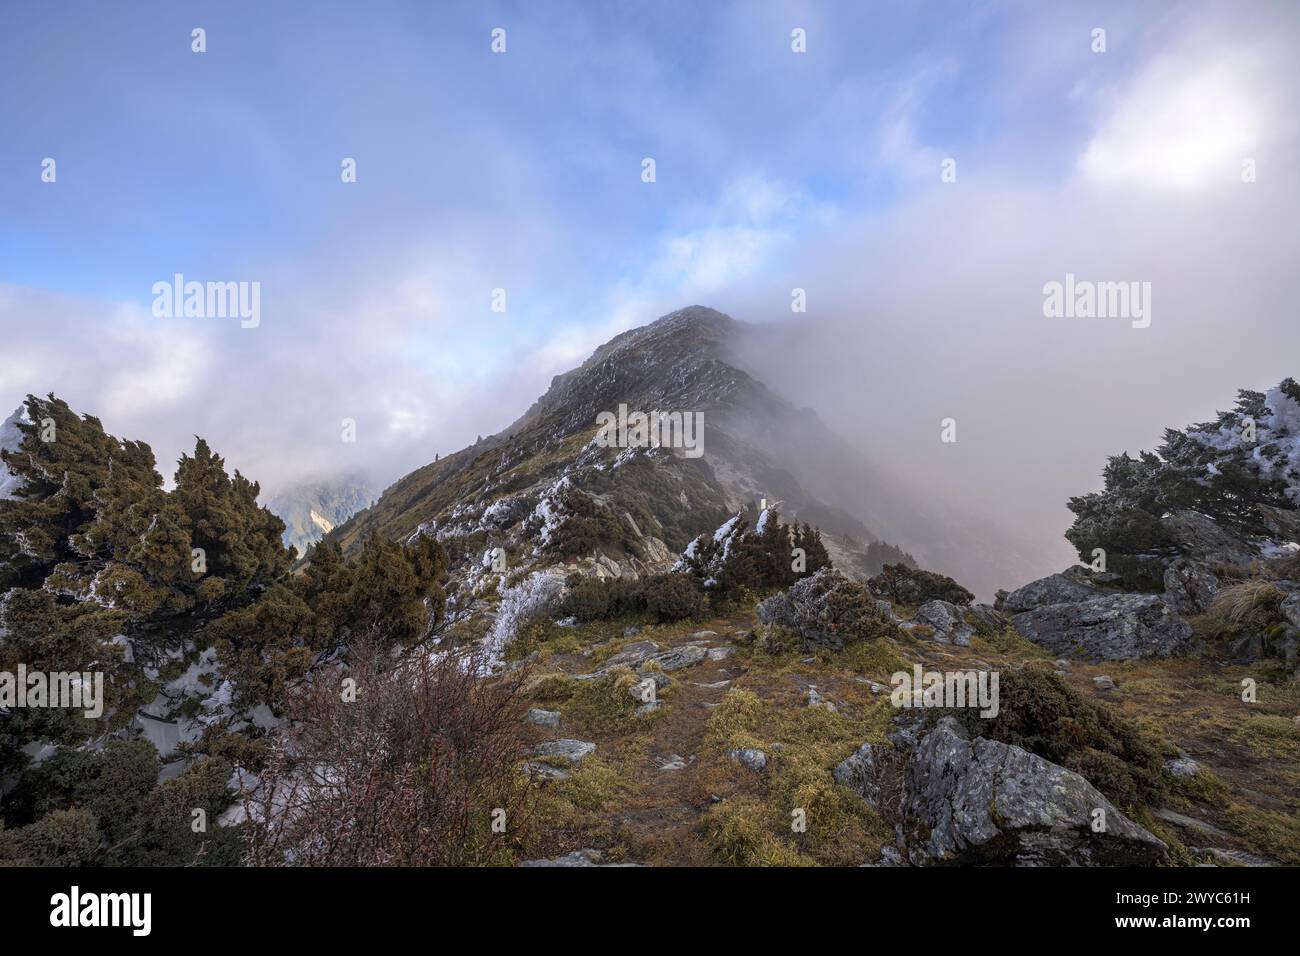 La vetta di una montagna a malapena visibile attraverso nuvole disperse, creando un etereo paesaggio di mistero Foto Stock